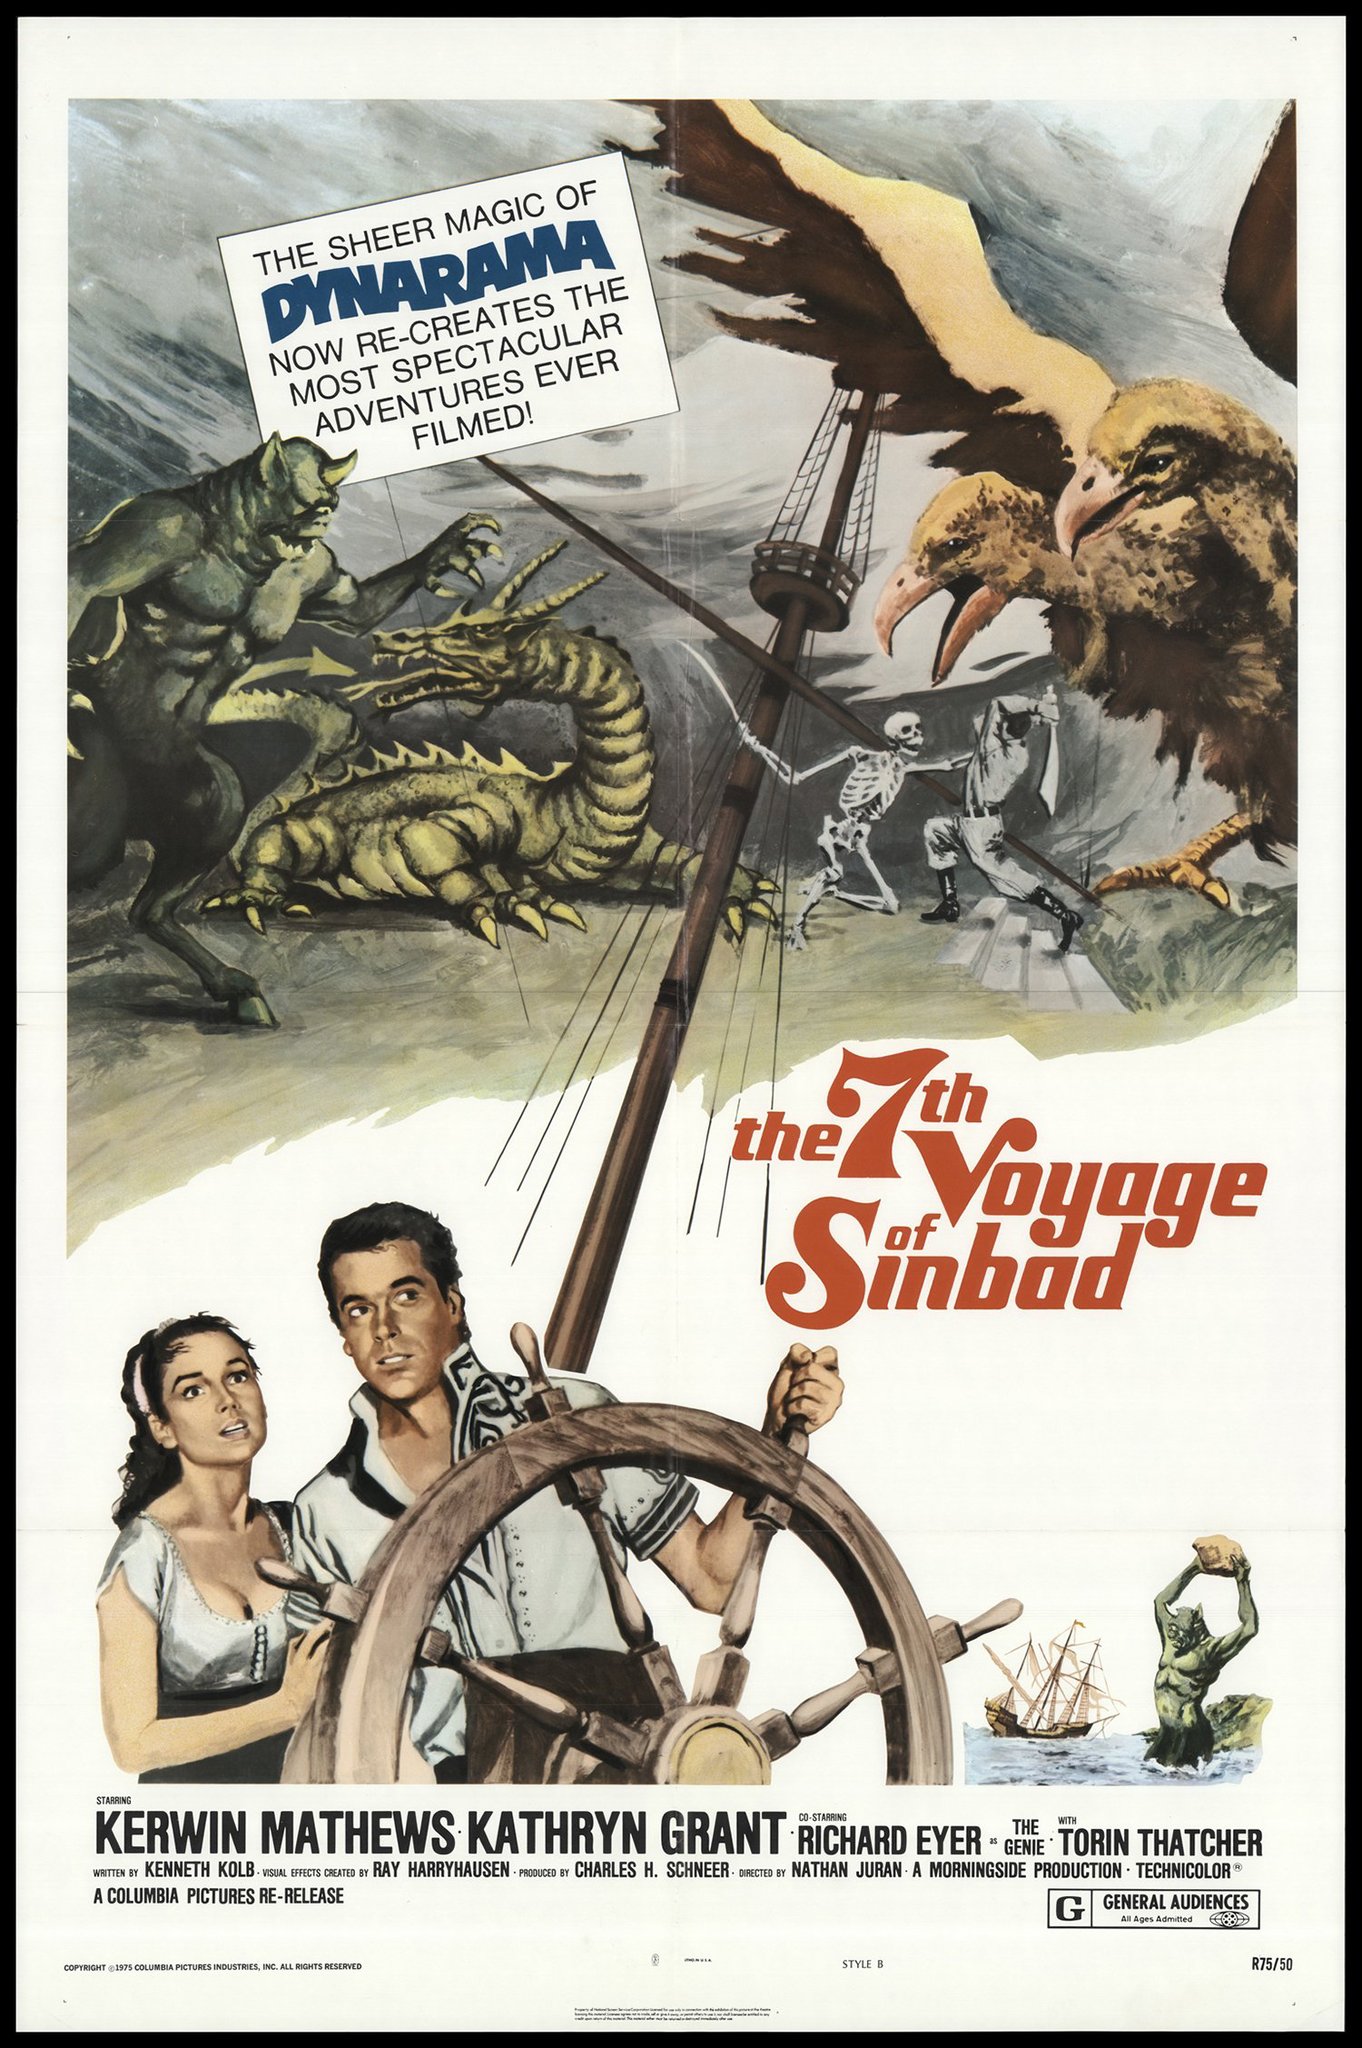 Nonton film The 7th Voyage of Sinbad layarkaca21 indoxx1 ganool online streaming terbaru